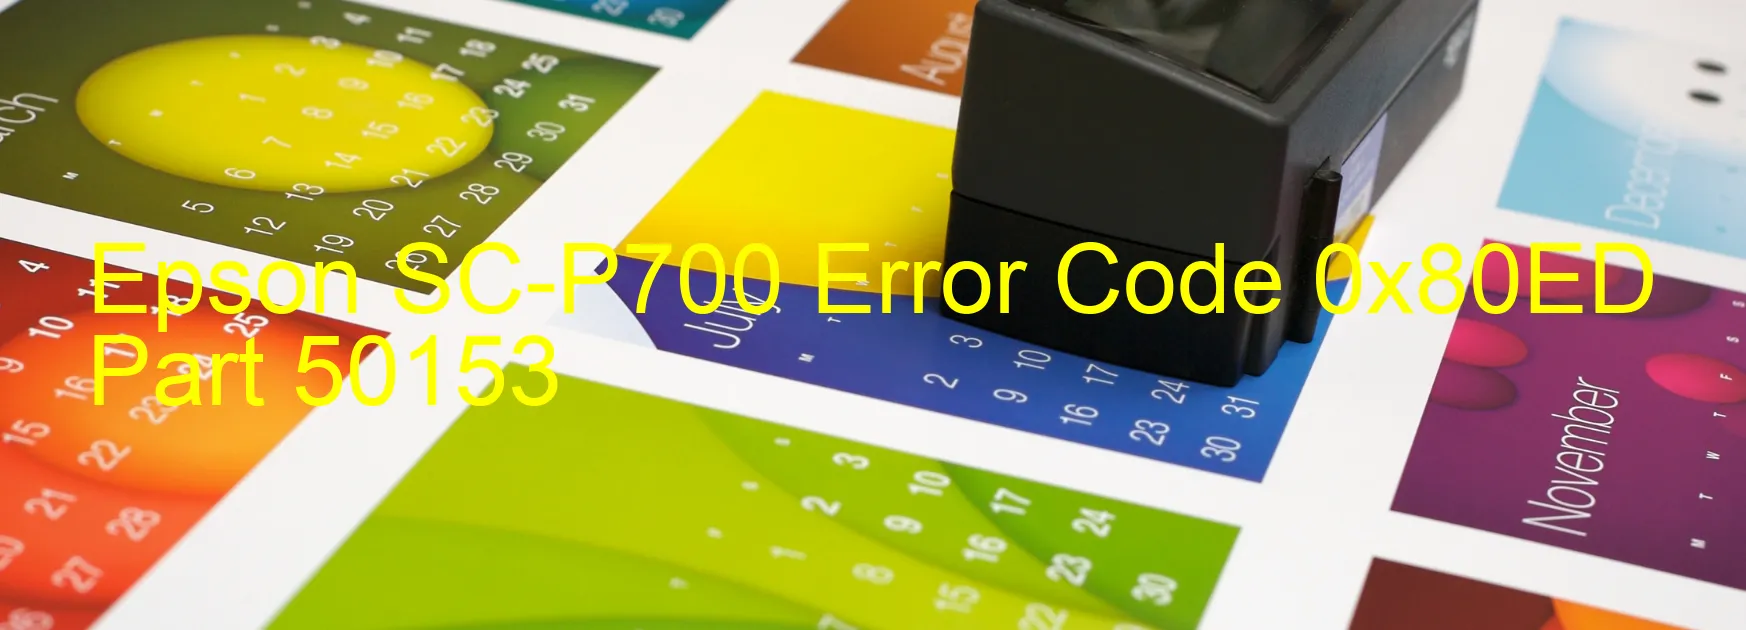 Epson SC-P700 Error 0x80ED